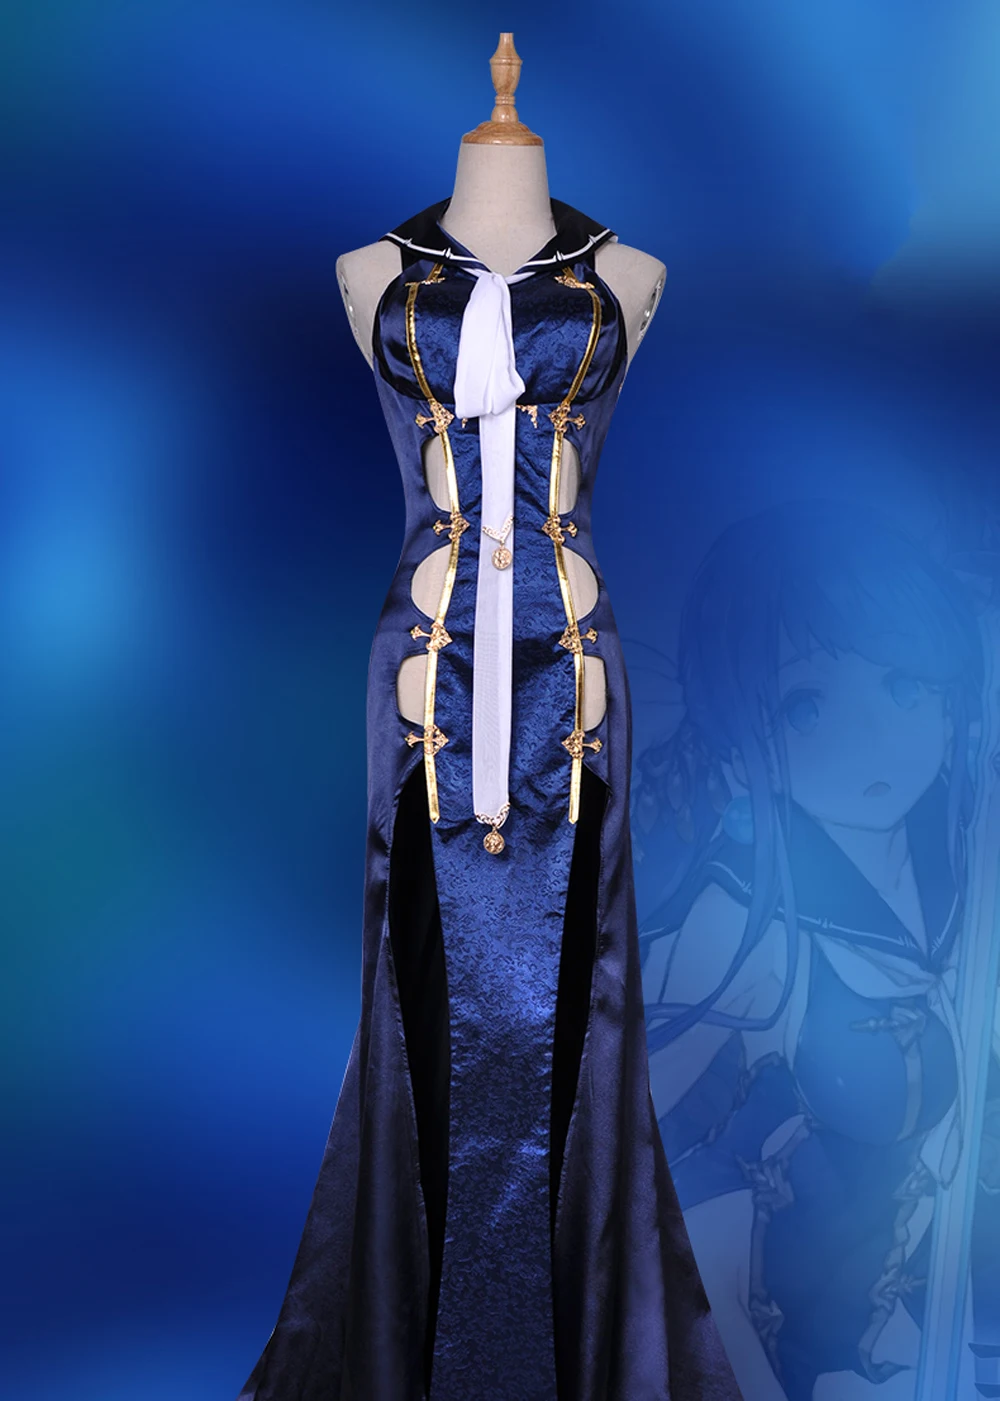 VEVEFHUANG SINoALICE маленький костюм русалки для косплея сексуальное длинное синее платье униформа аксессуары карнавал Хэллоуин аниме одежда ou